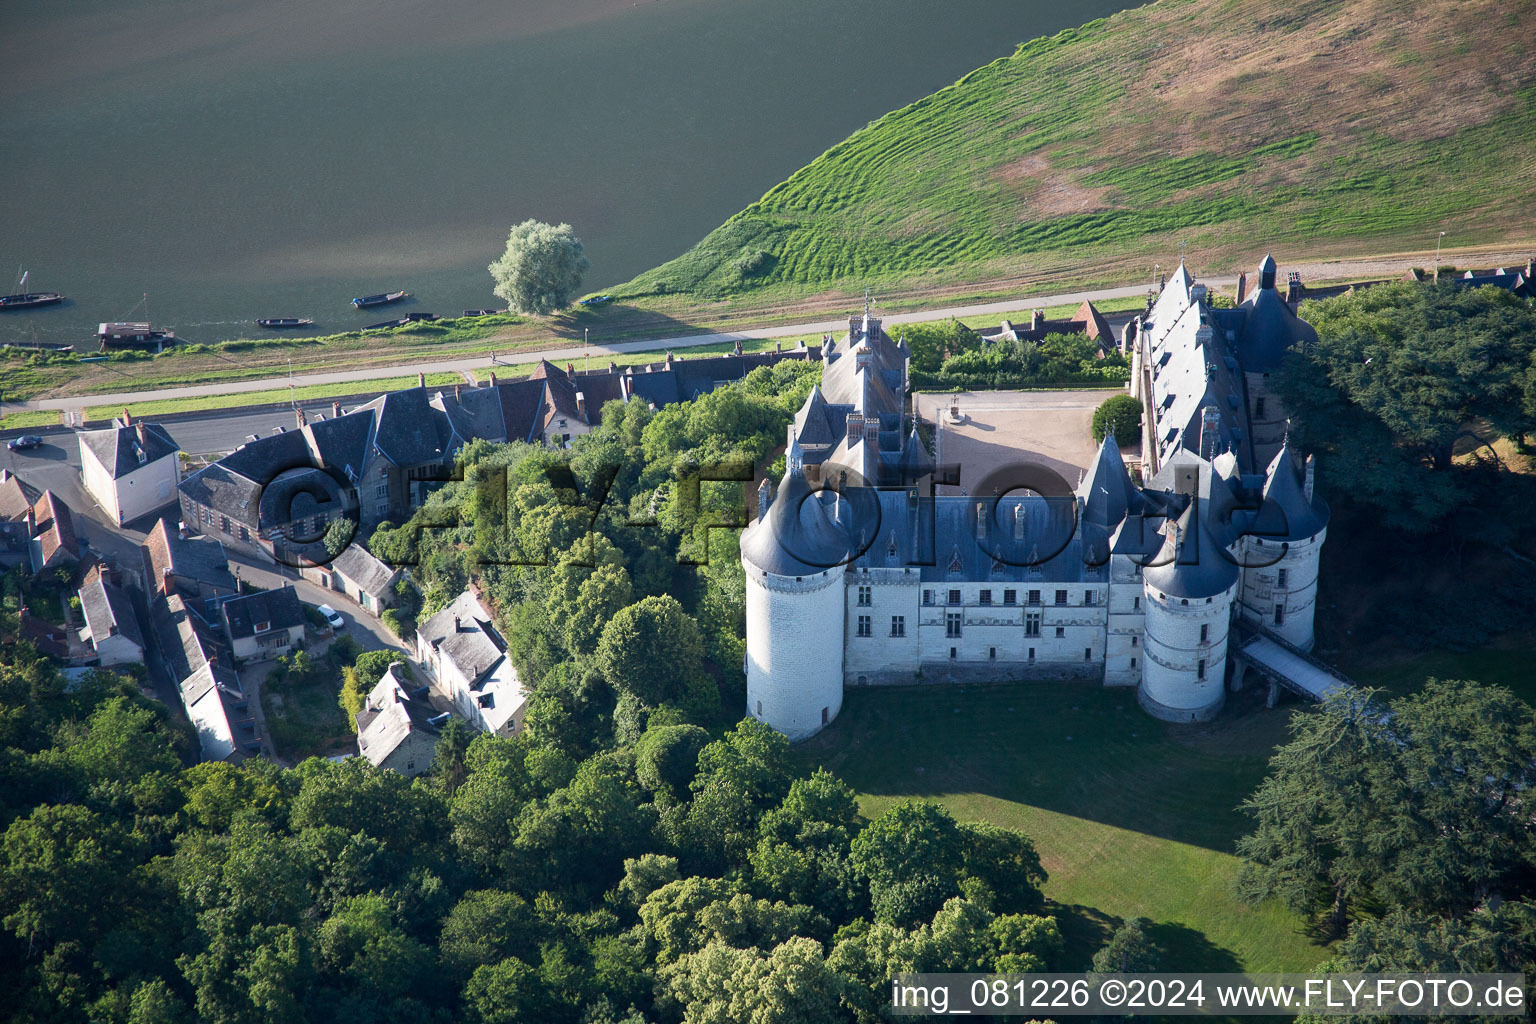 Castle of Schloss Chaumont in Chaumont-sur-Loire in Centre-Val de Loire, France